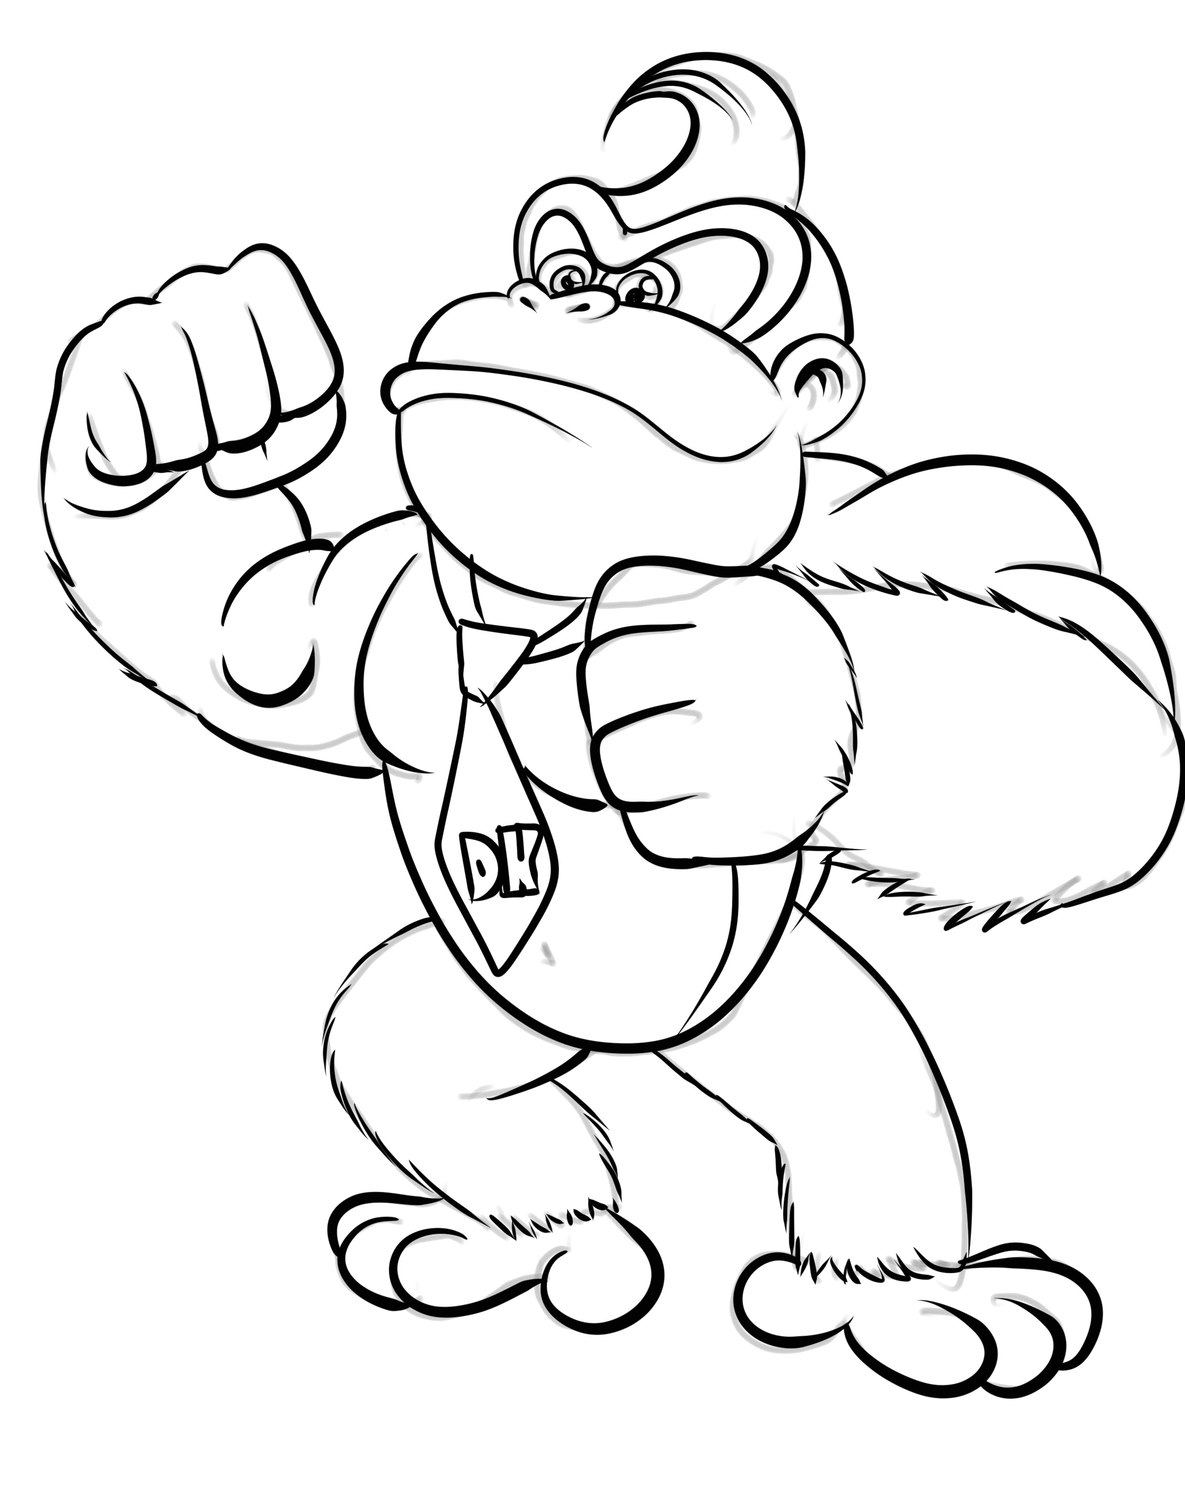 Dibujo 05 de Donkey Kong para imprimir y colorear